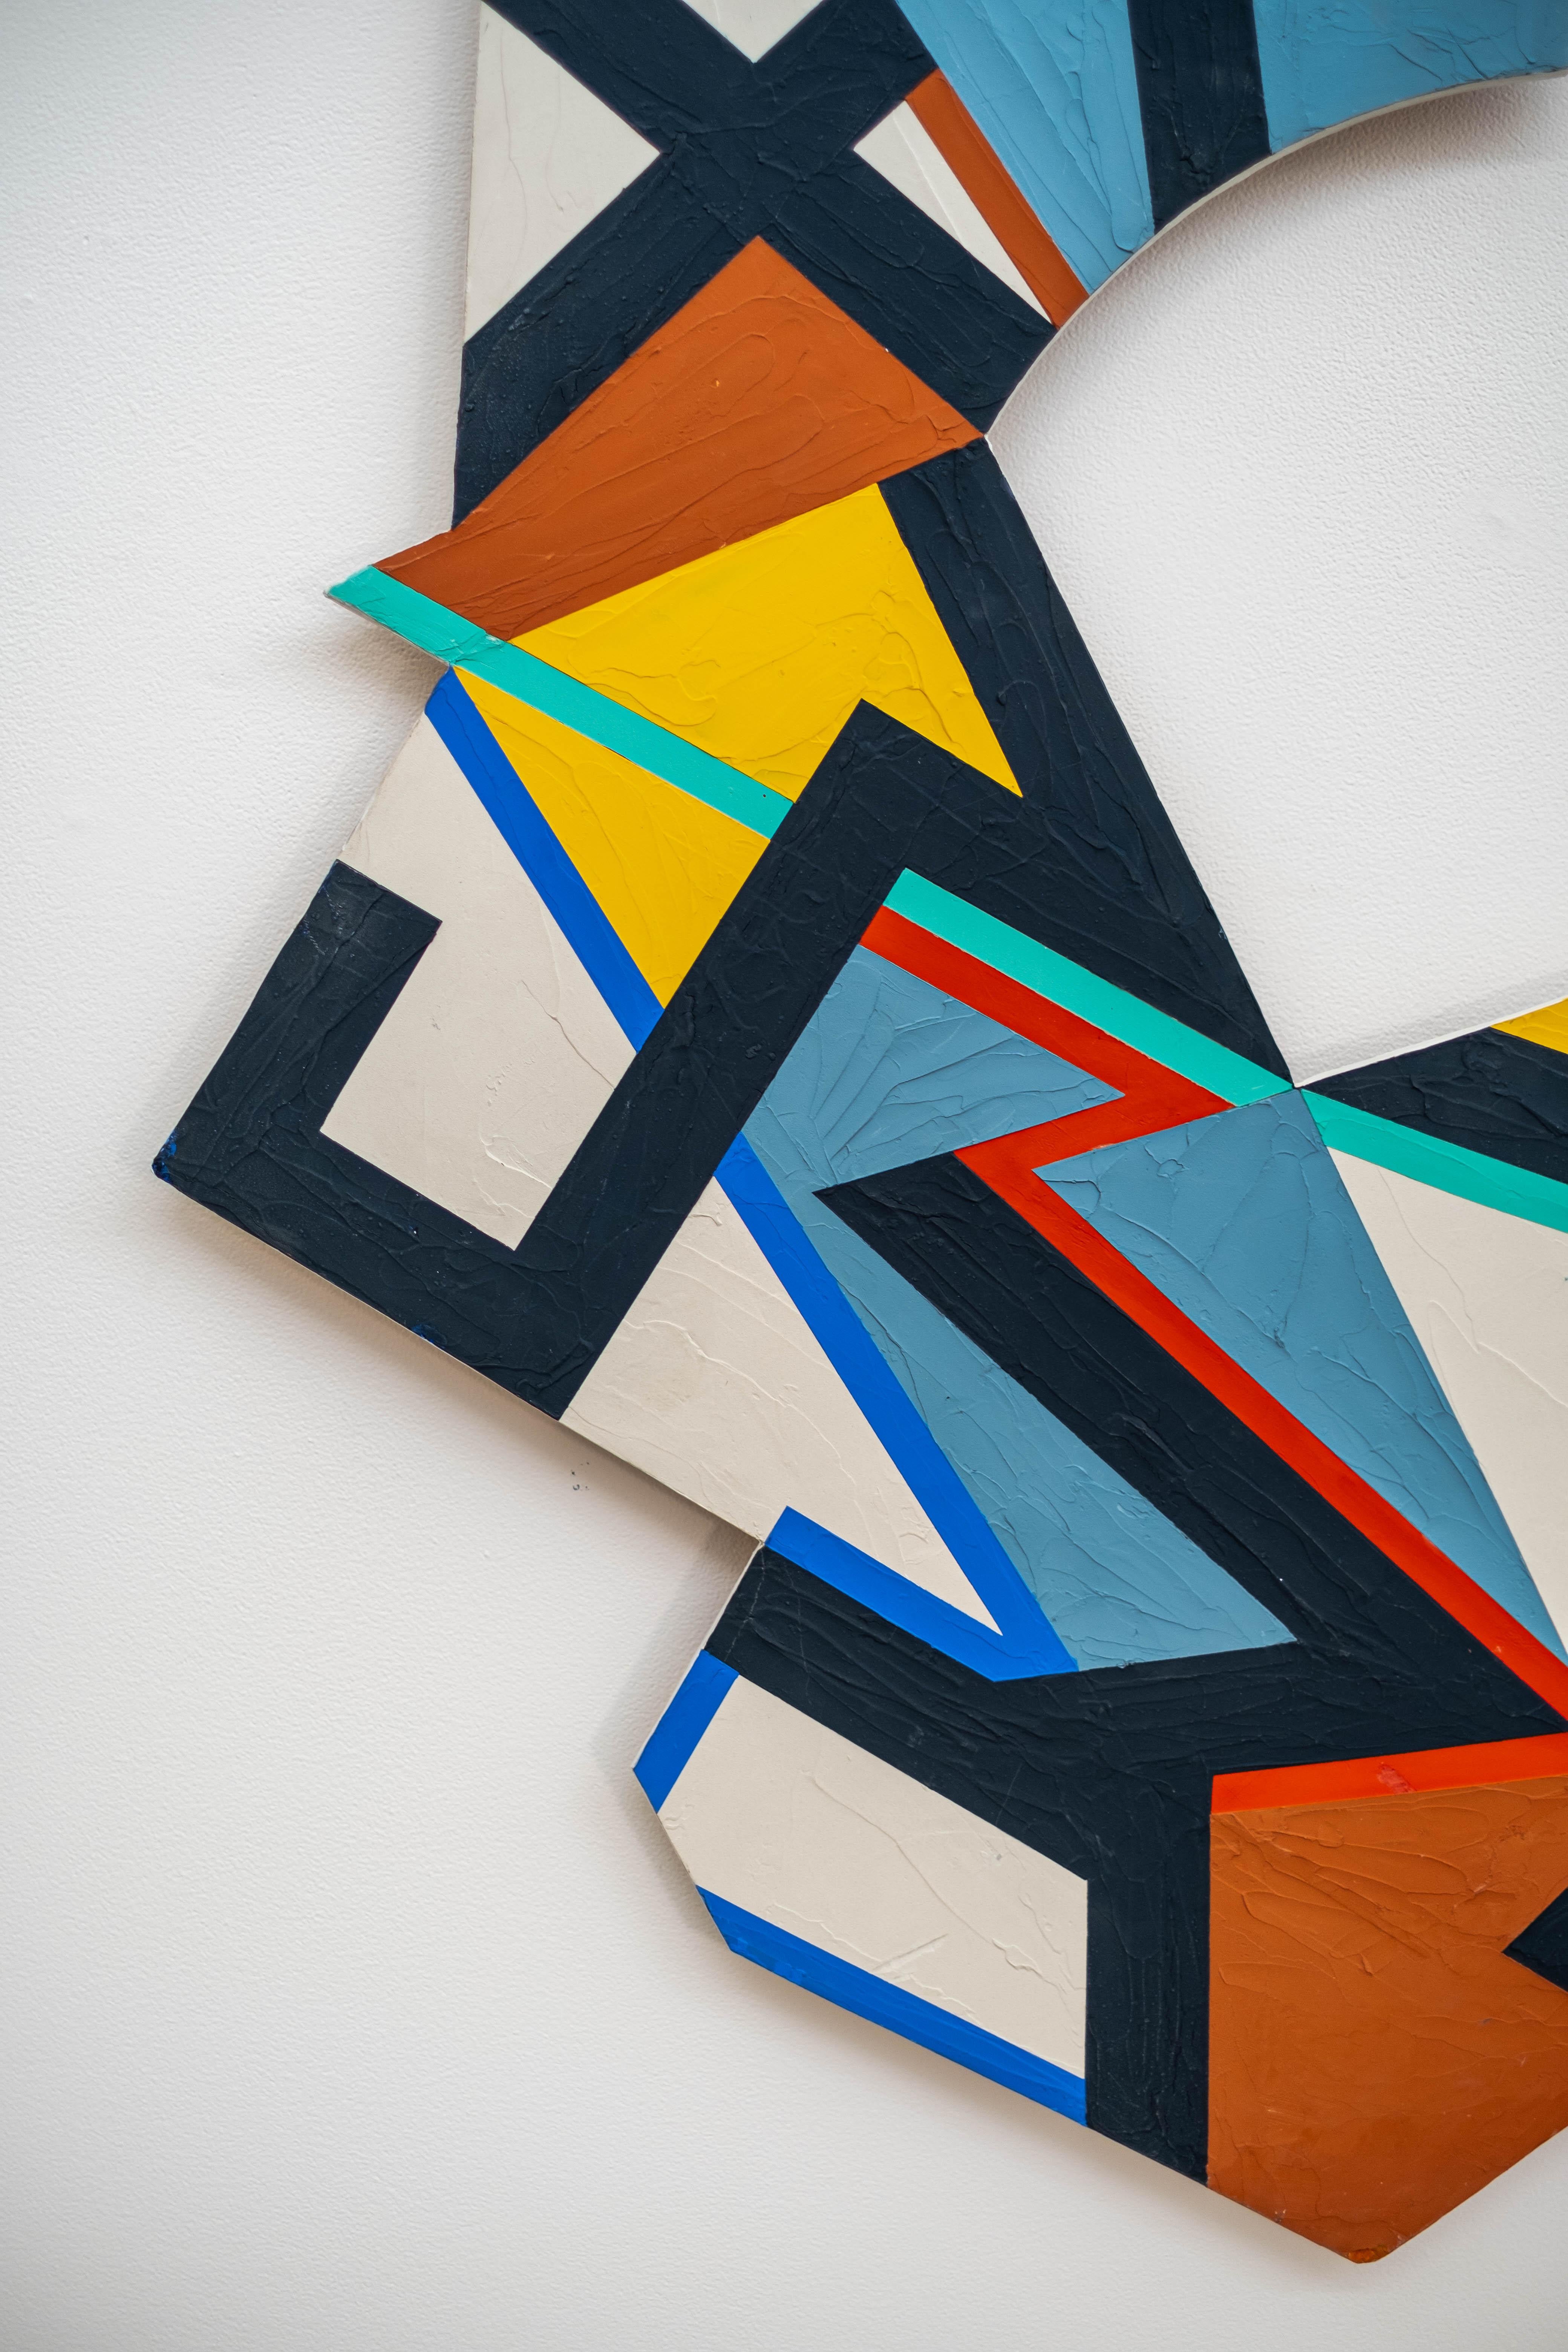 Yvonne Lammerich a utilisé un motif dynamique, des couleurs audacieuses et une forme géométrique pour créer cette pièce contemporaine visuellement époustouflante. Les formes semblables à des blocs de construction - lignes, triangles, carrés et arcs